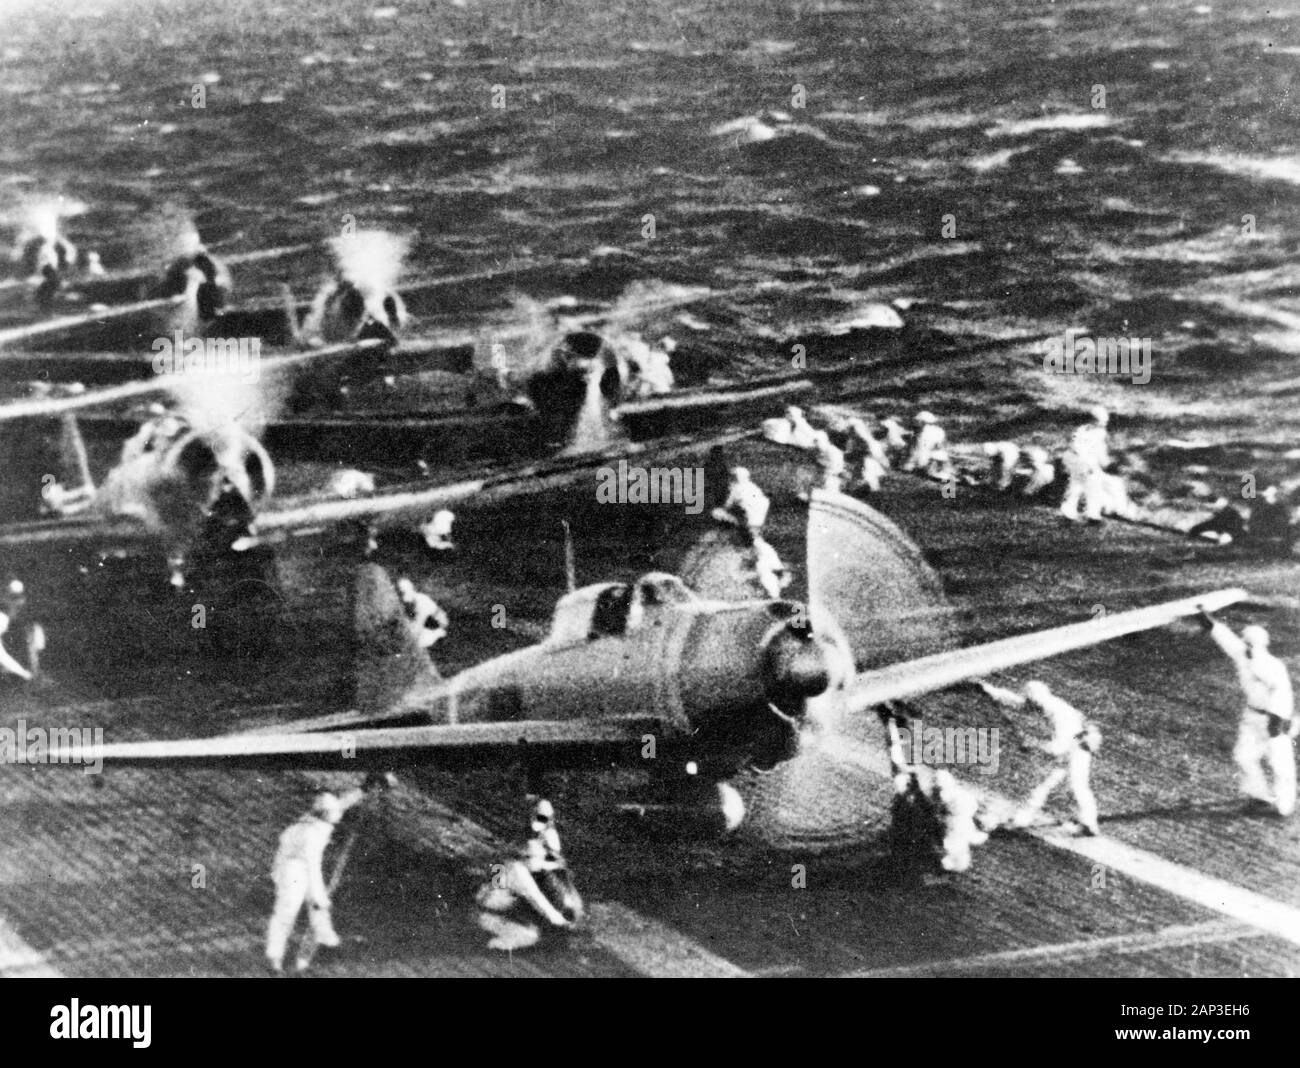 Attacco di Pearl Harbor, 7 dicembre 1941. Navale giapponese preparare degli aeromobili di decollare da una portaerei (riferito Shokaku) all'attacco a Pearl Harbor durante la mattina del 7 dicembre 1941. Piano in primo piano è un 'zero' Fighter, davanti a 'VAL' dive bombardieri. Questo è probabilmente il lancio della seconda ondata di attacco. Foto Stock